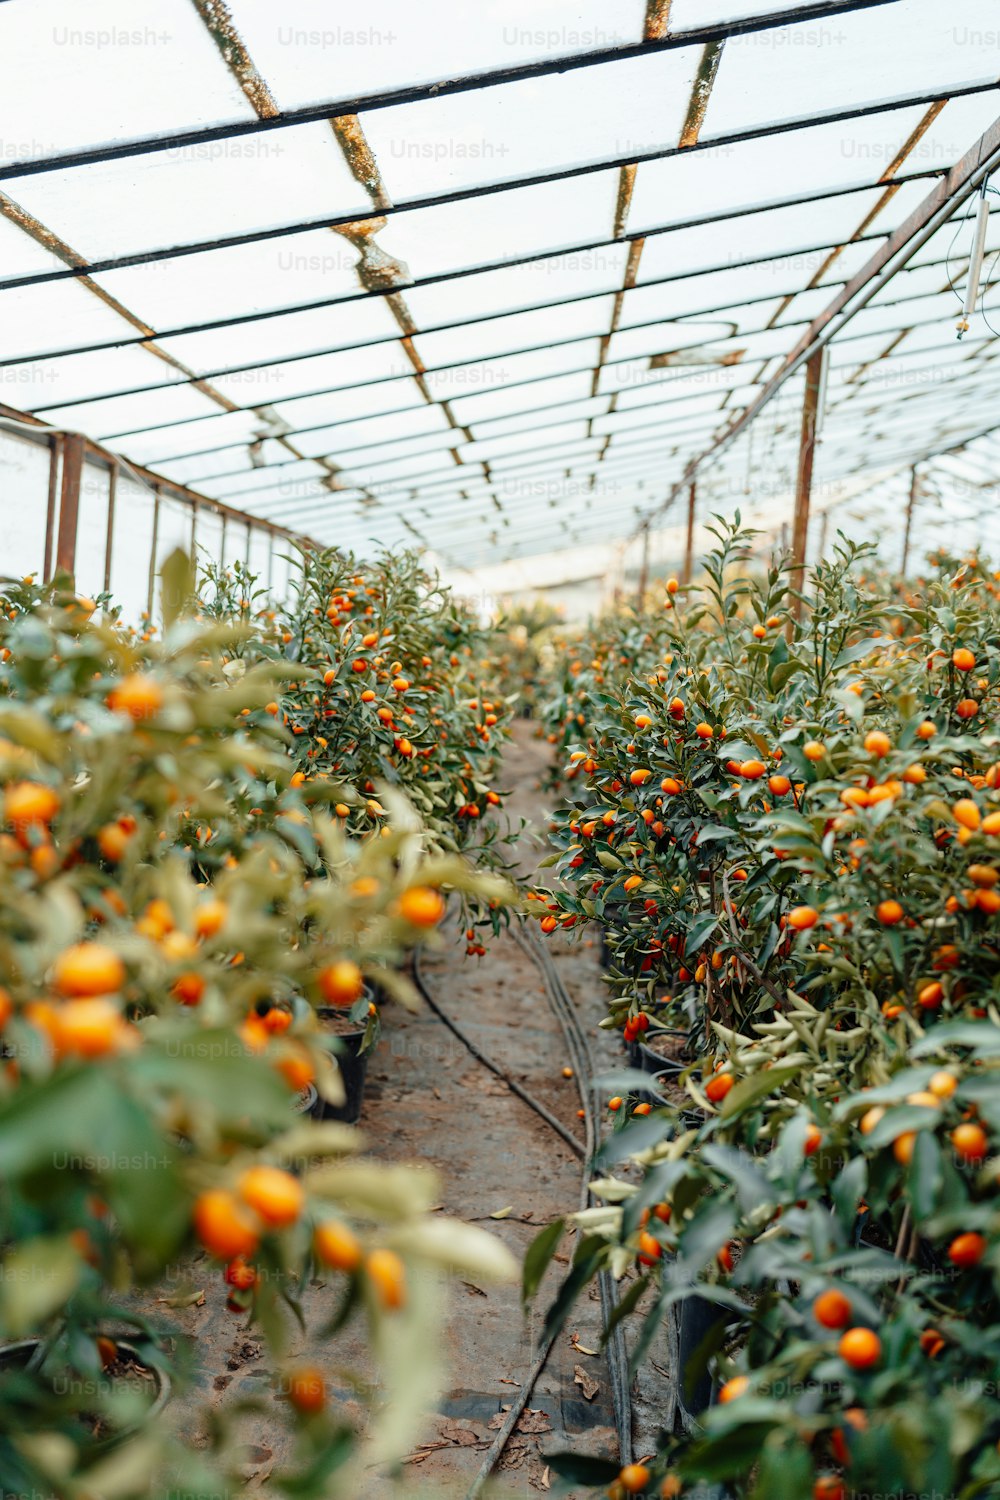 Un invernadero lleno de muchas naranjas y plantas